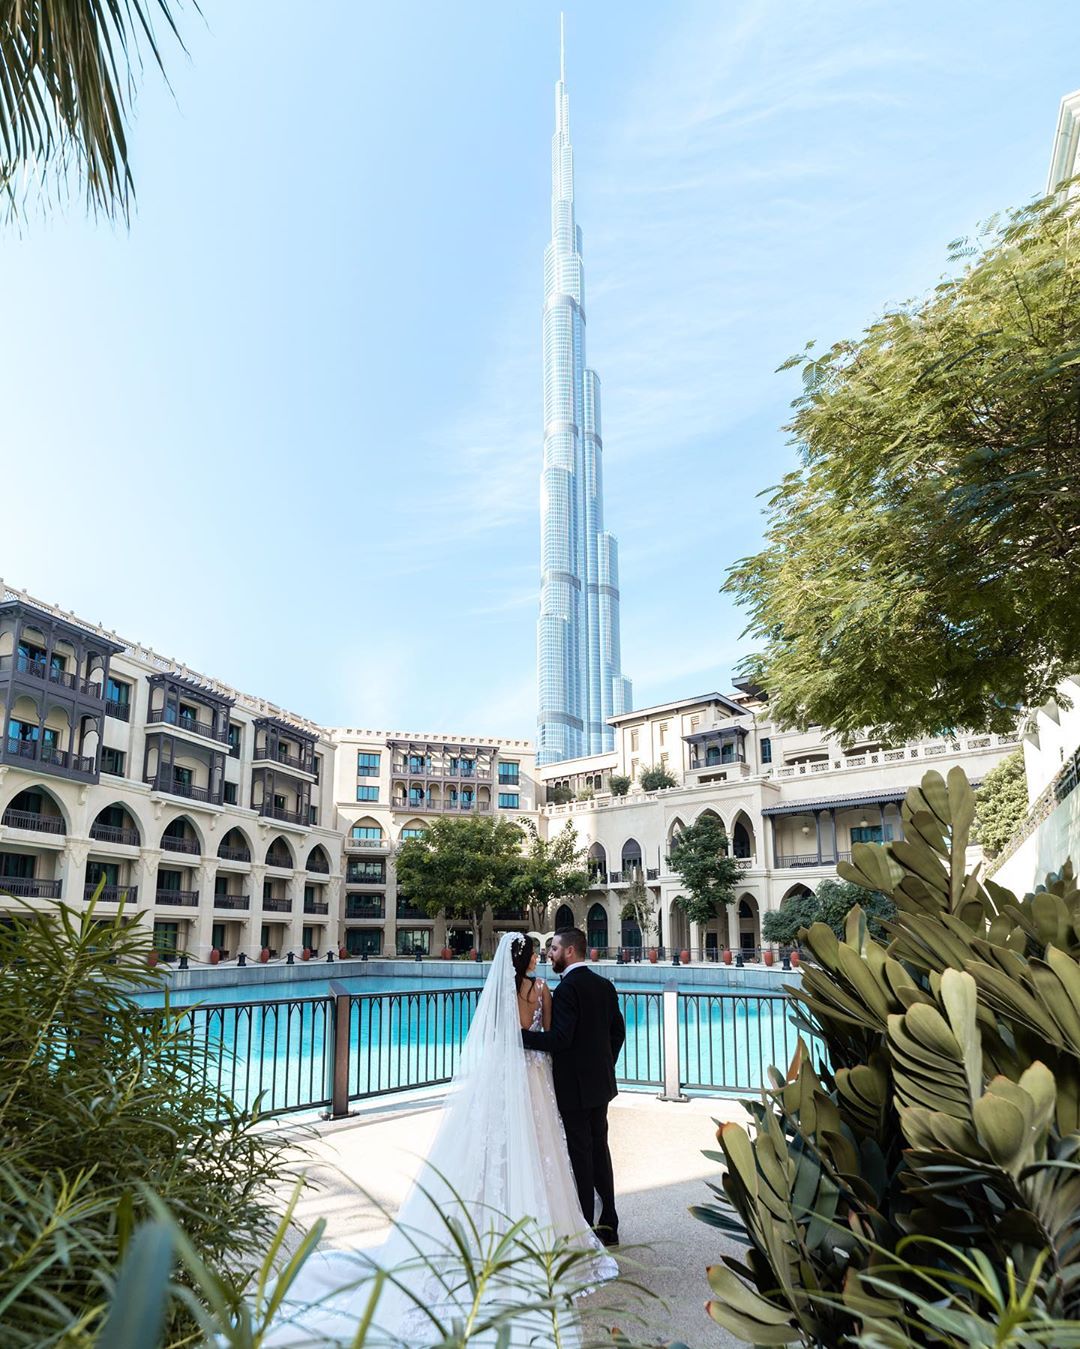 Забронируйте Профессионального Свадебного Фотографа В Дубае (Абу-Даби) И Навсегда Запечатлите Свою Свадьбу в Качественных Фотографиях. Оцените Наше Портфолио.